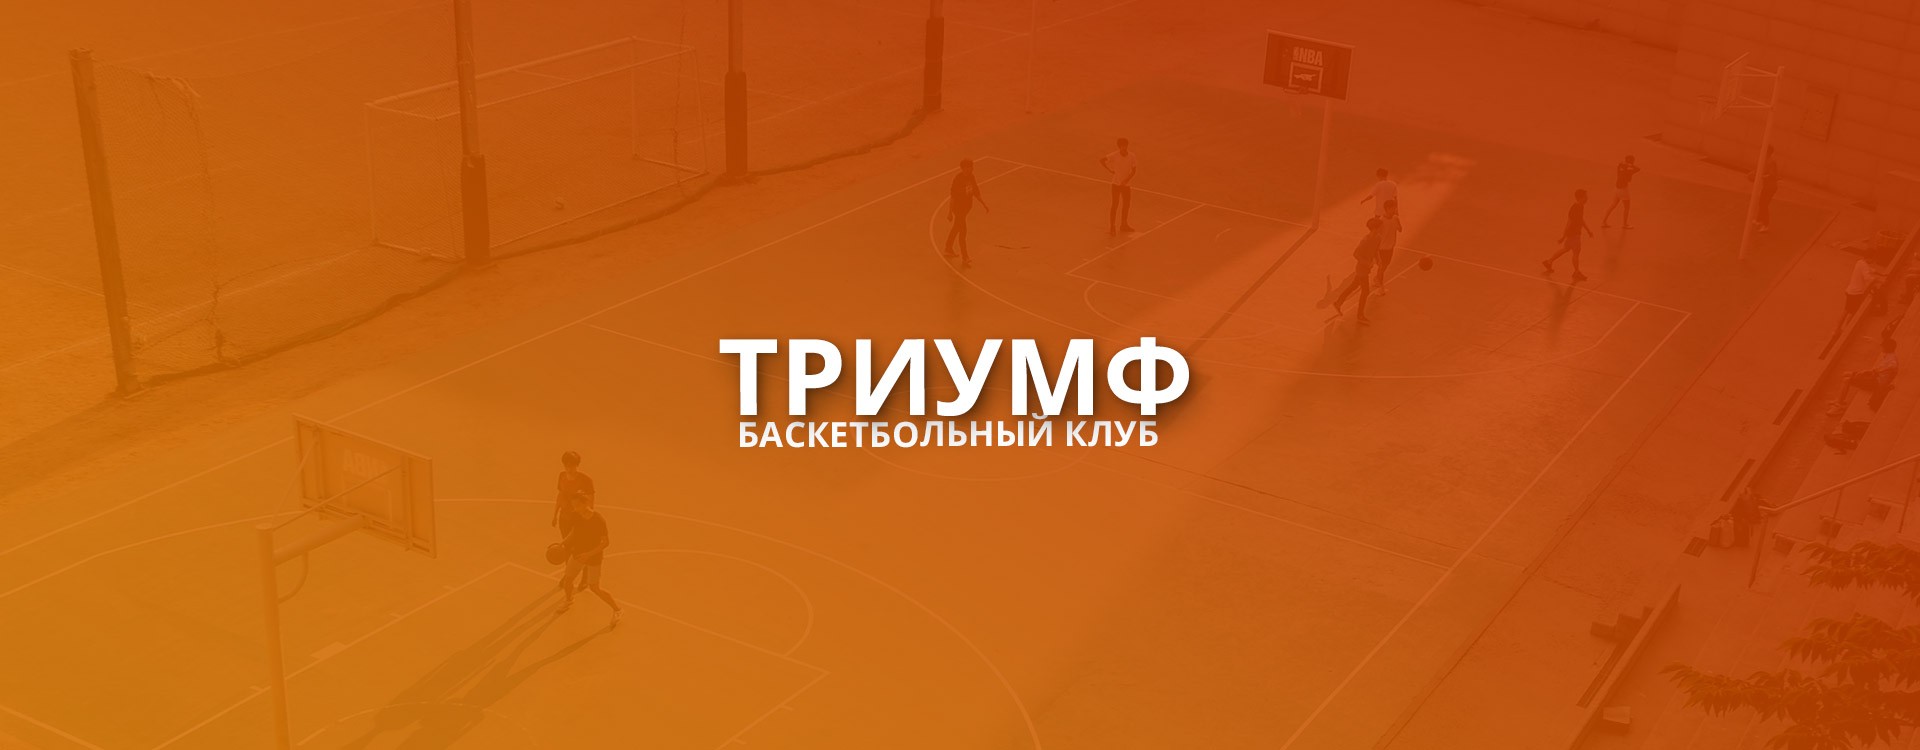 Баскетбольный клуб «Триумф»